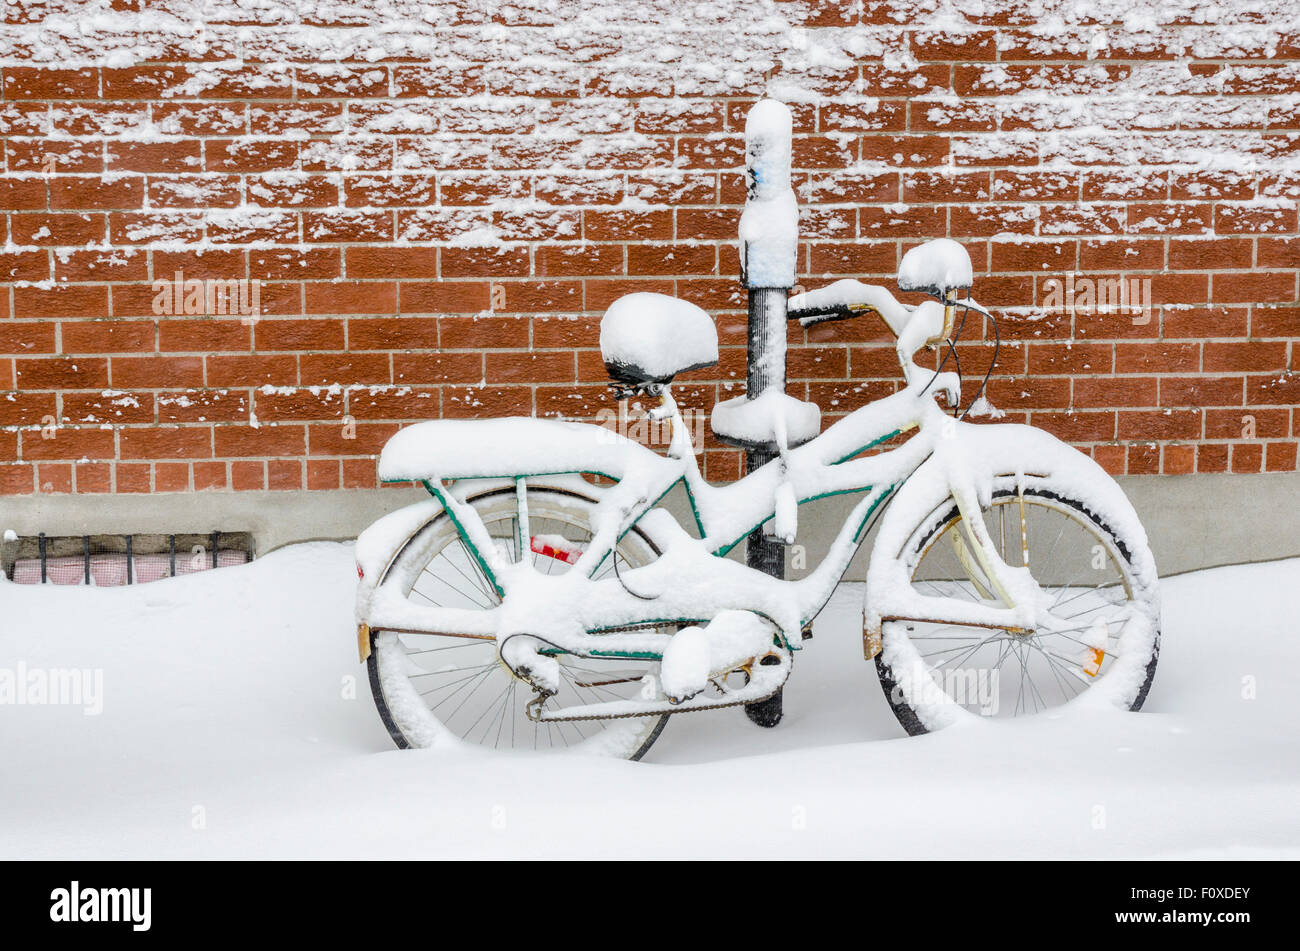 Ein Fahrrad gegen eine Mauer gelehnt und in tiefen Neuschnee bedeckt, nach einem Schneesturm in Montreal, Kanada Stockfoto